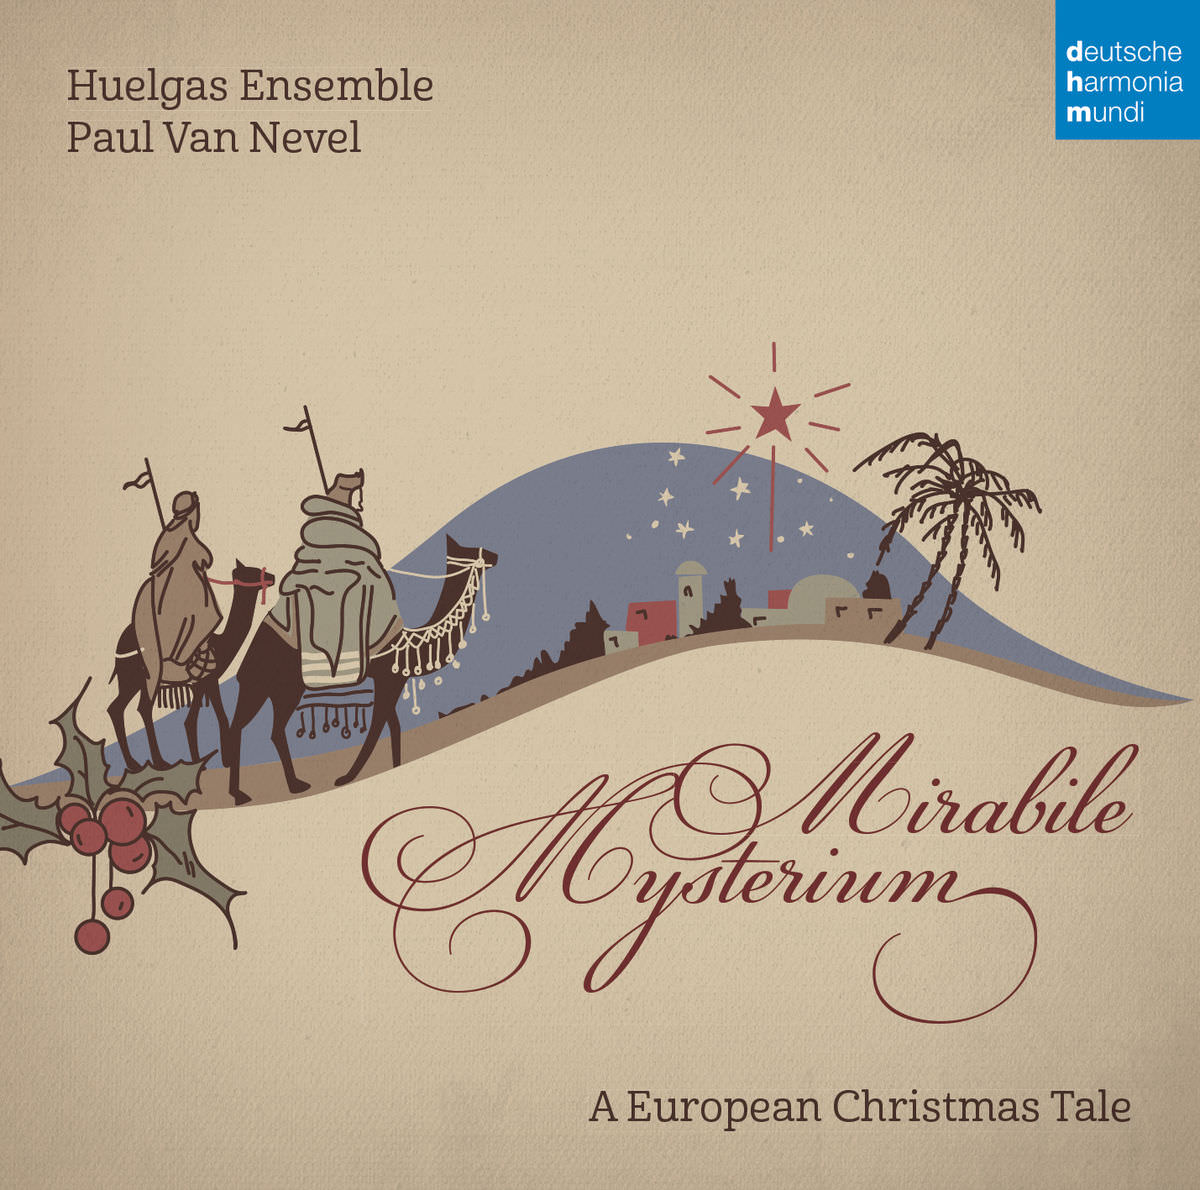 Huelgas Ensemble - Mirabile Mysterium - A European Christmas Tale (2014) [FLAC 24bit/96kHz]